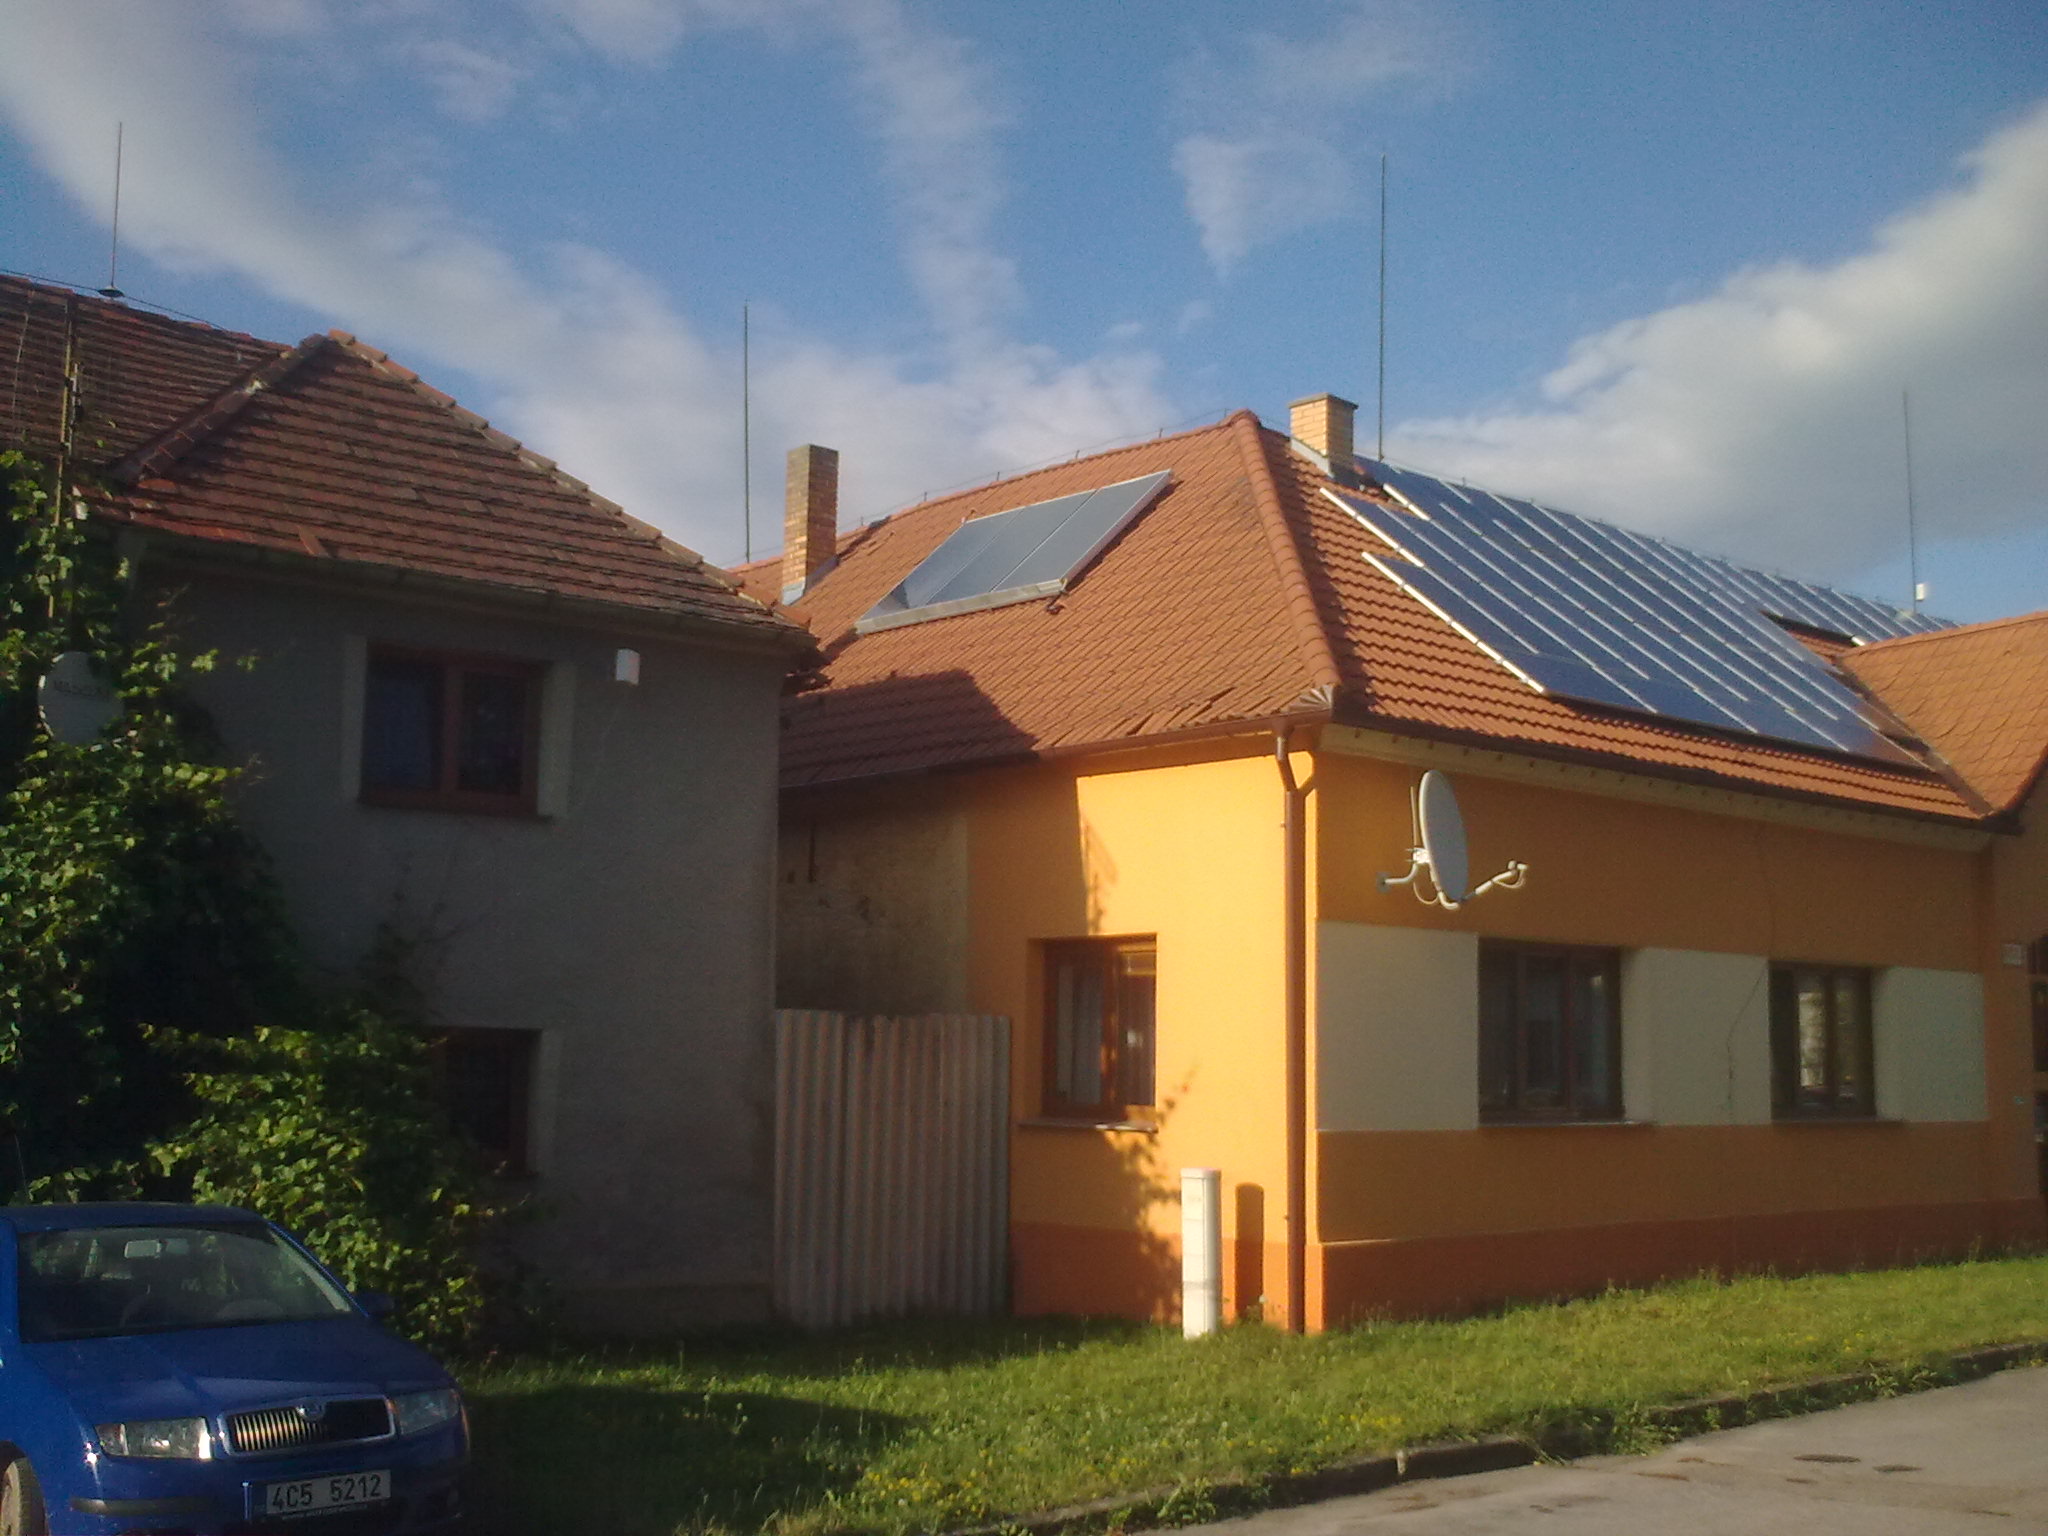 Solární kolektory jsou proti fotovoltaice procházka růžovou zahradou.